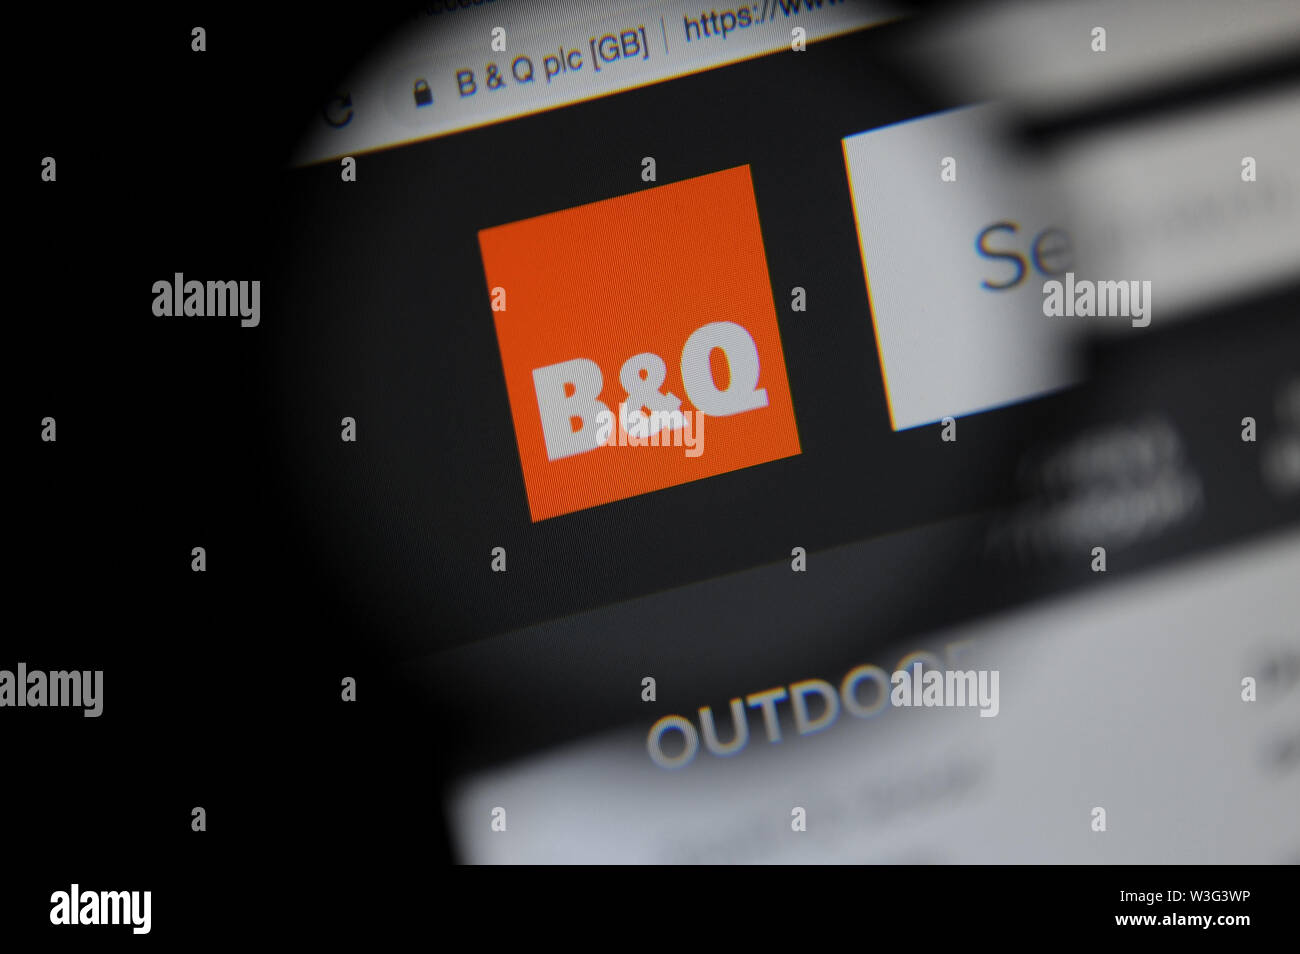 Sitio web de B&Q vistos a través de una lupa Foto de stock